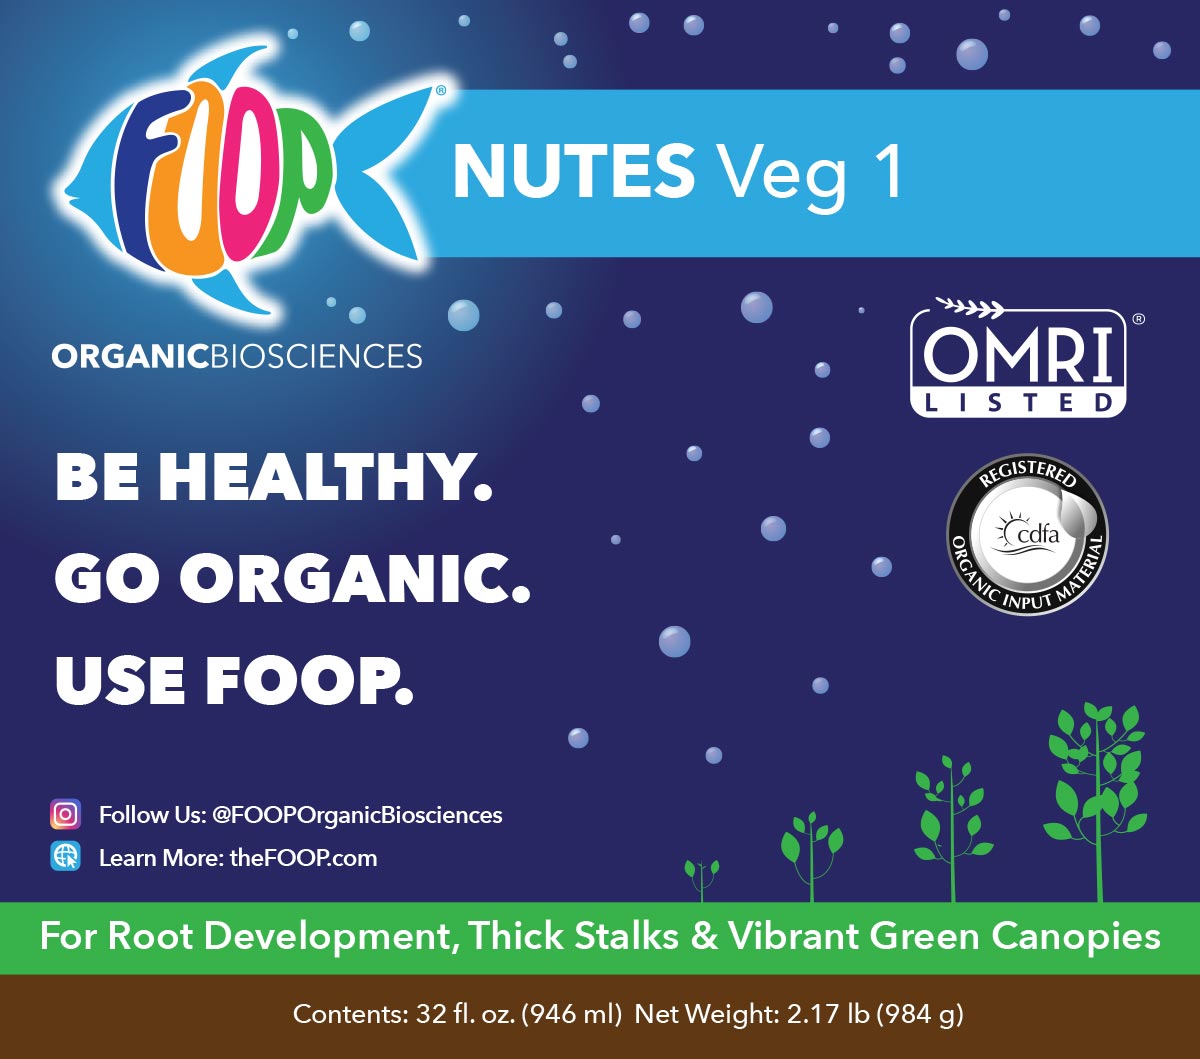 FOOP Nutes Veg 1 Label